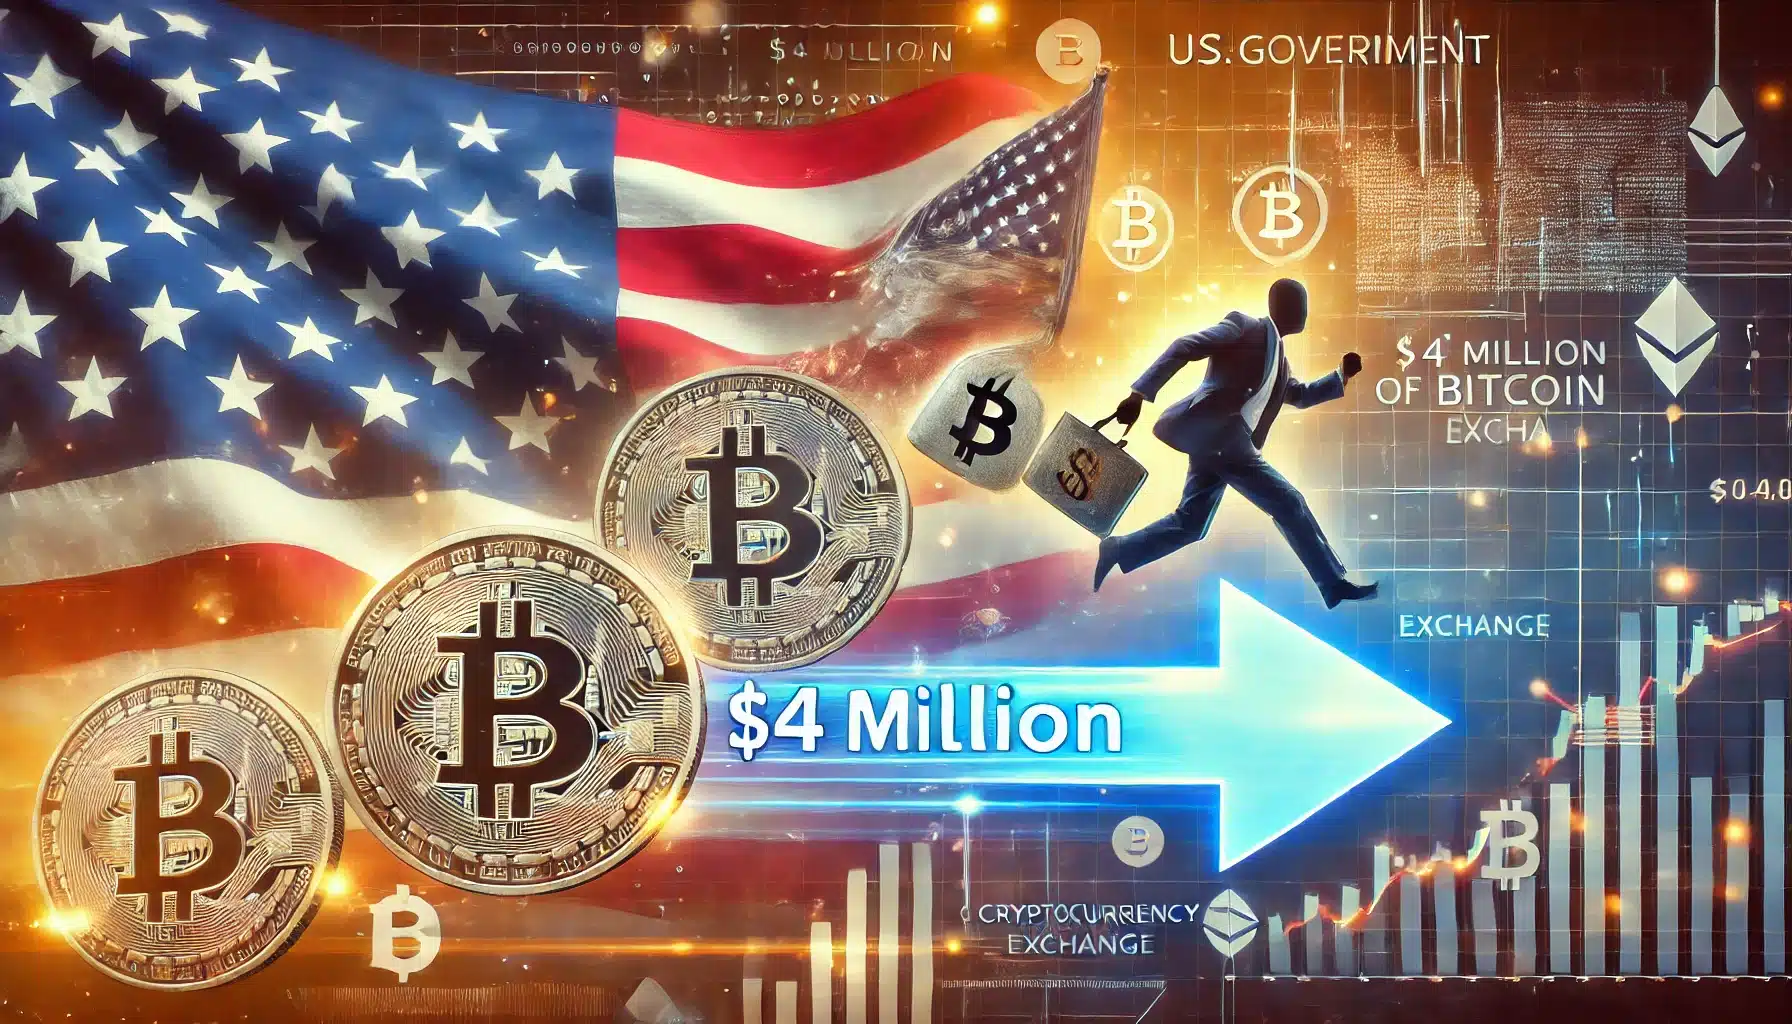 Raport Arkham pokazuje, że rząd USA przenosi Bitcoin o wartości 4 milionów dolarów na giełdę kryptowalut